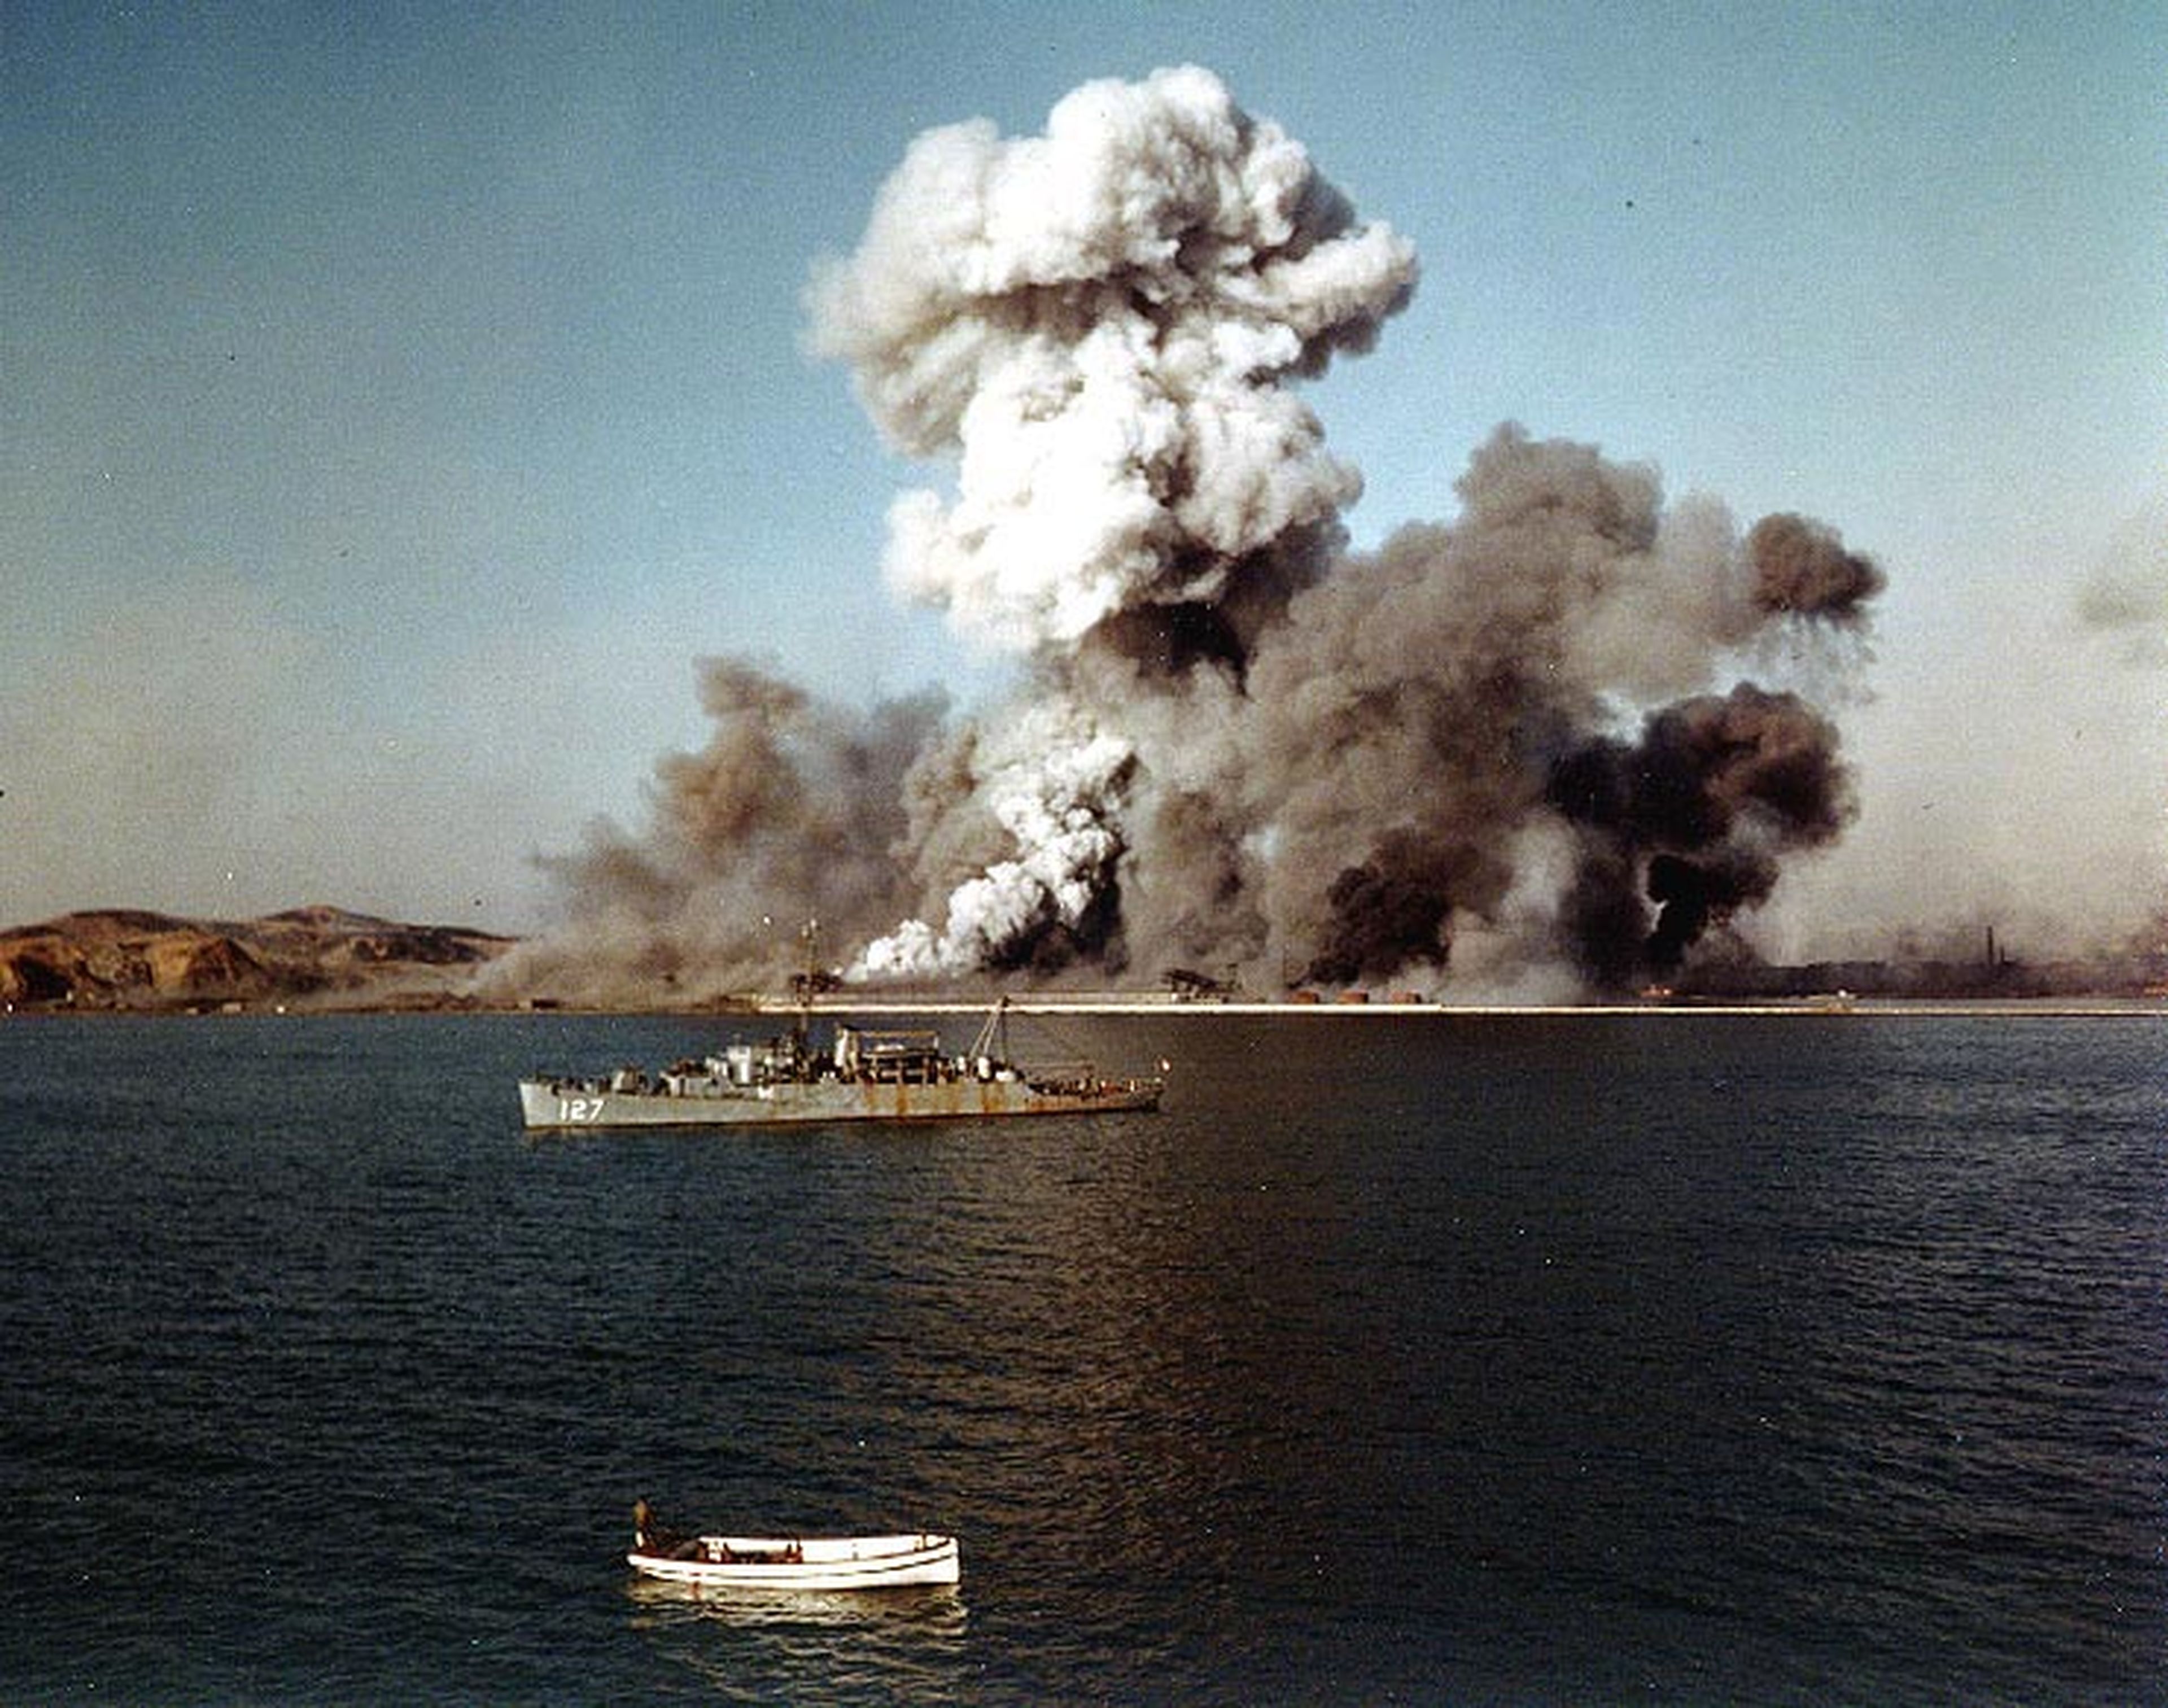 Destrucción del puerto de Hungnam en 1950 en la Guerra de Corea (Wikimedia)